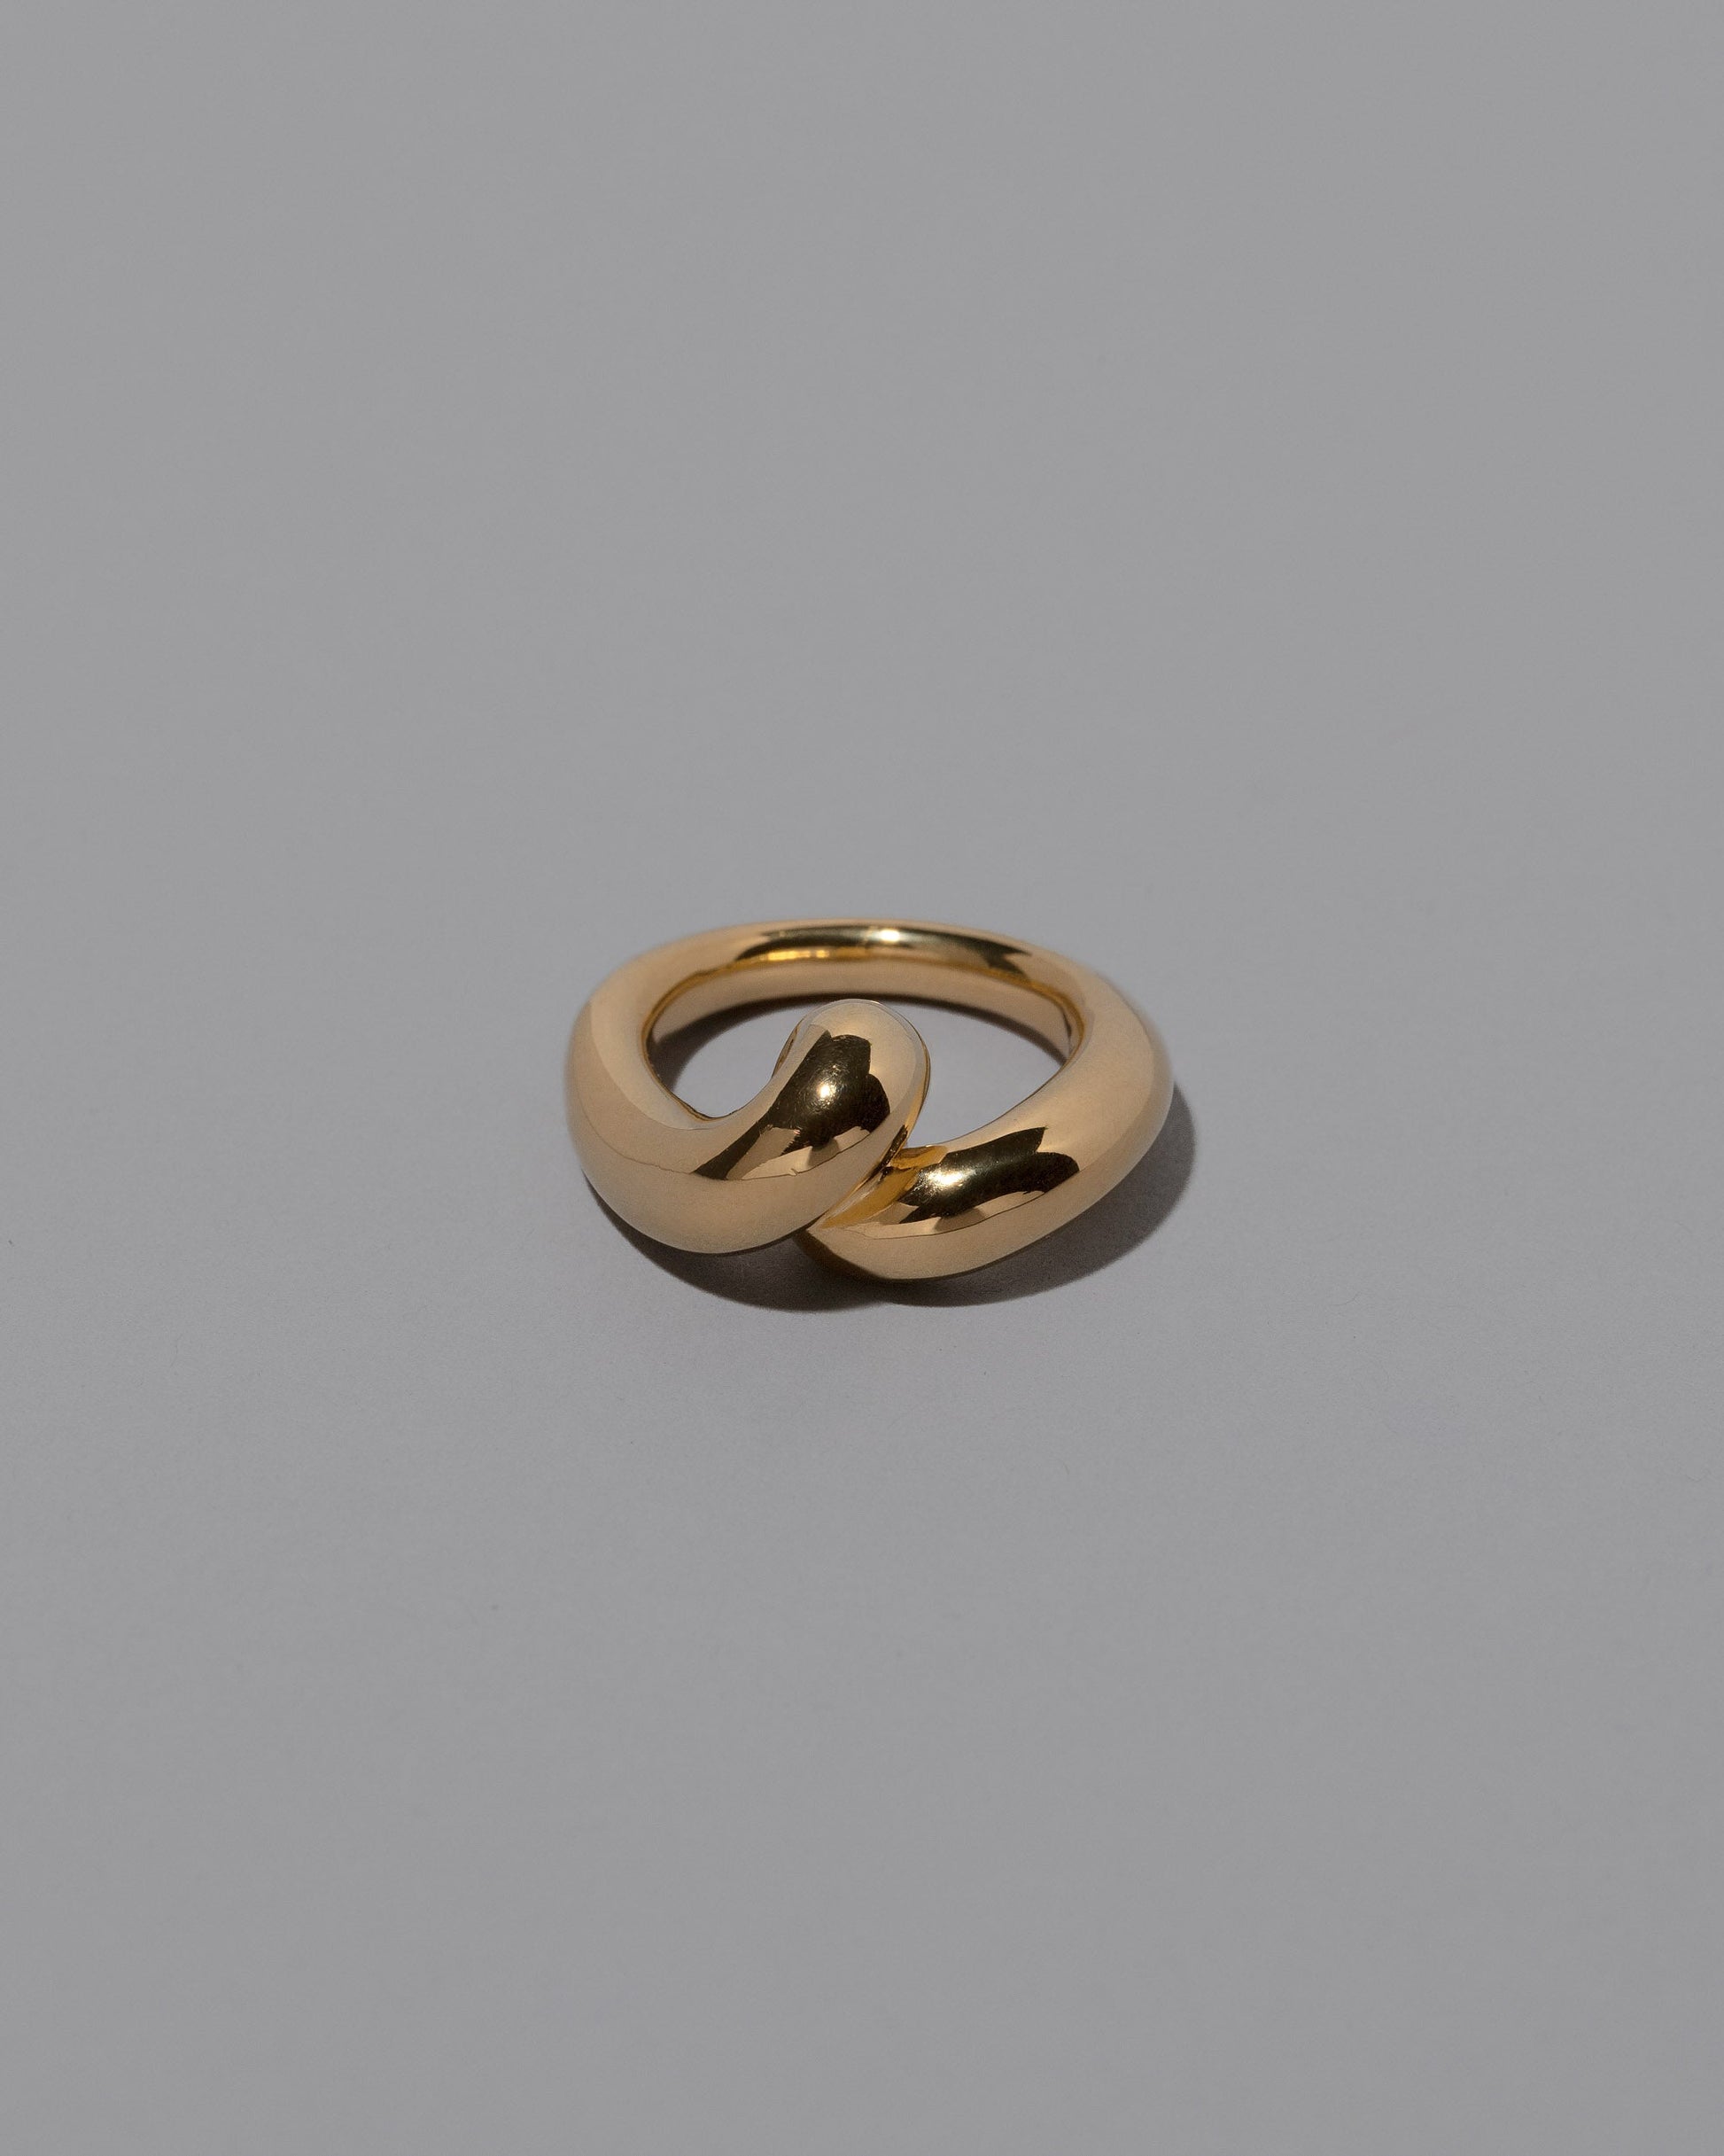 CRZM 22k Gold Landform Ring on light color background.